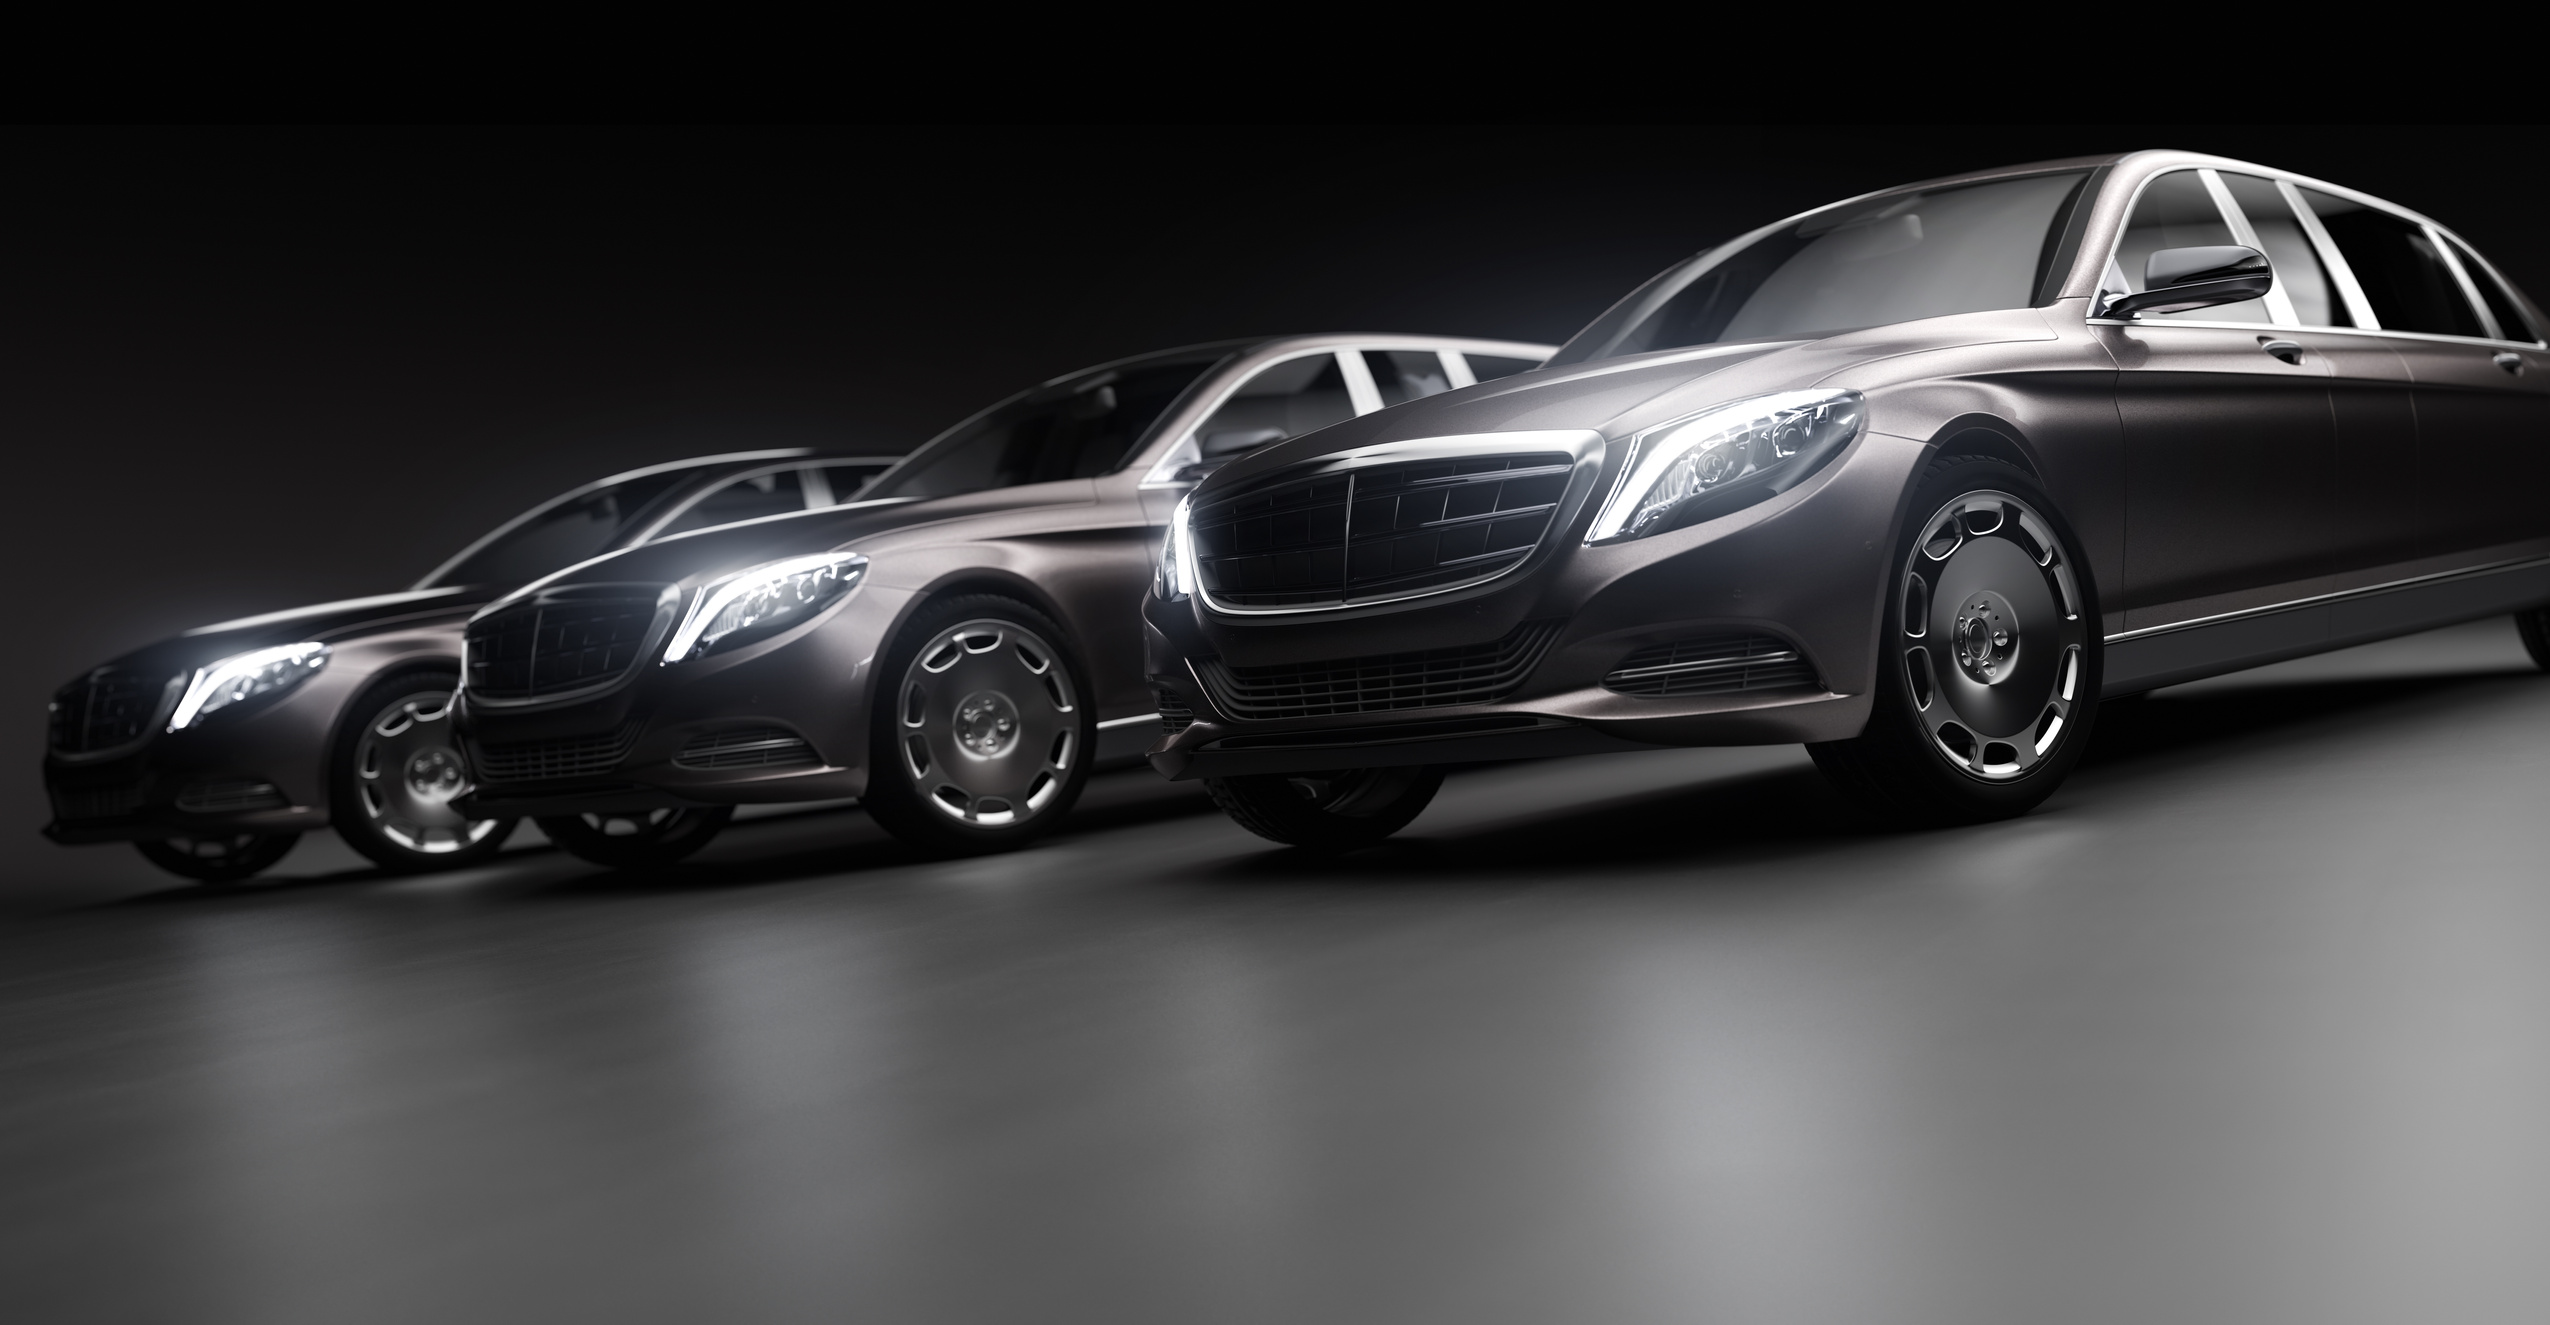 Luxury Cars Side by Side